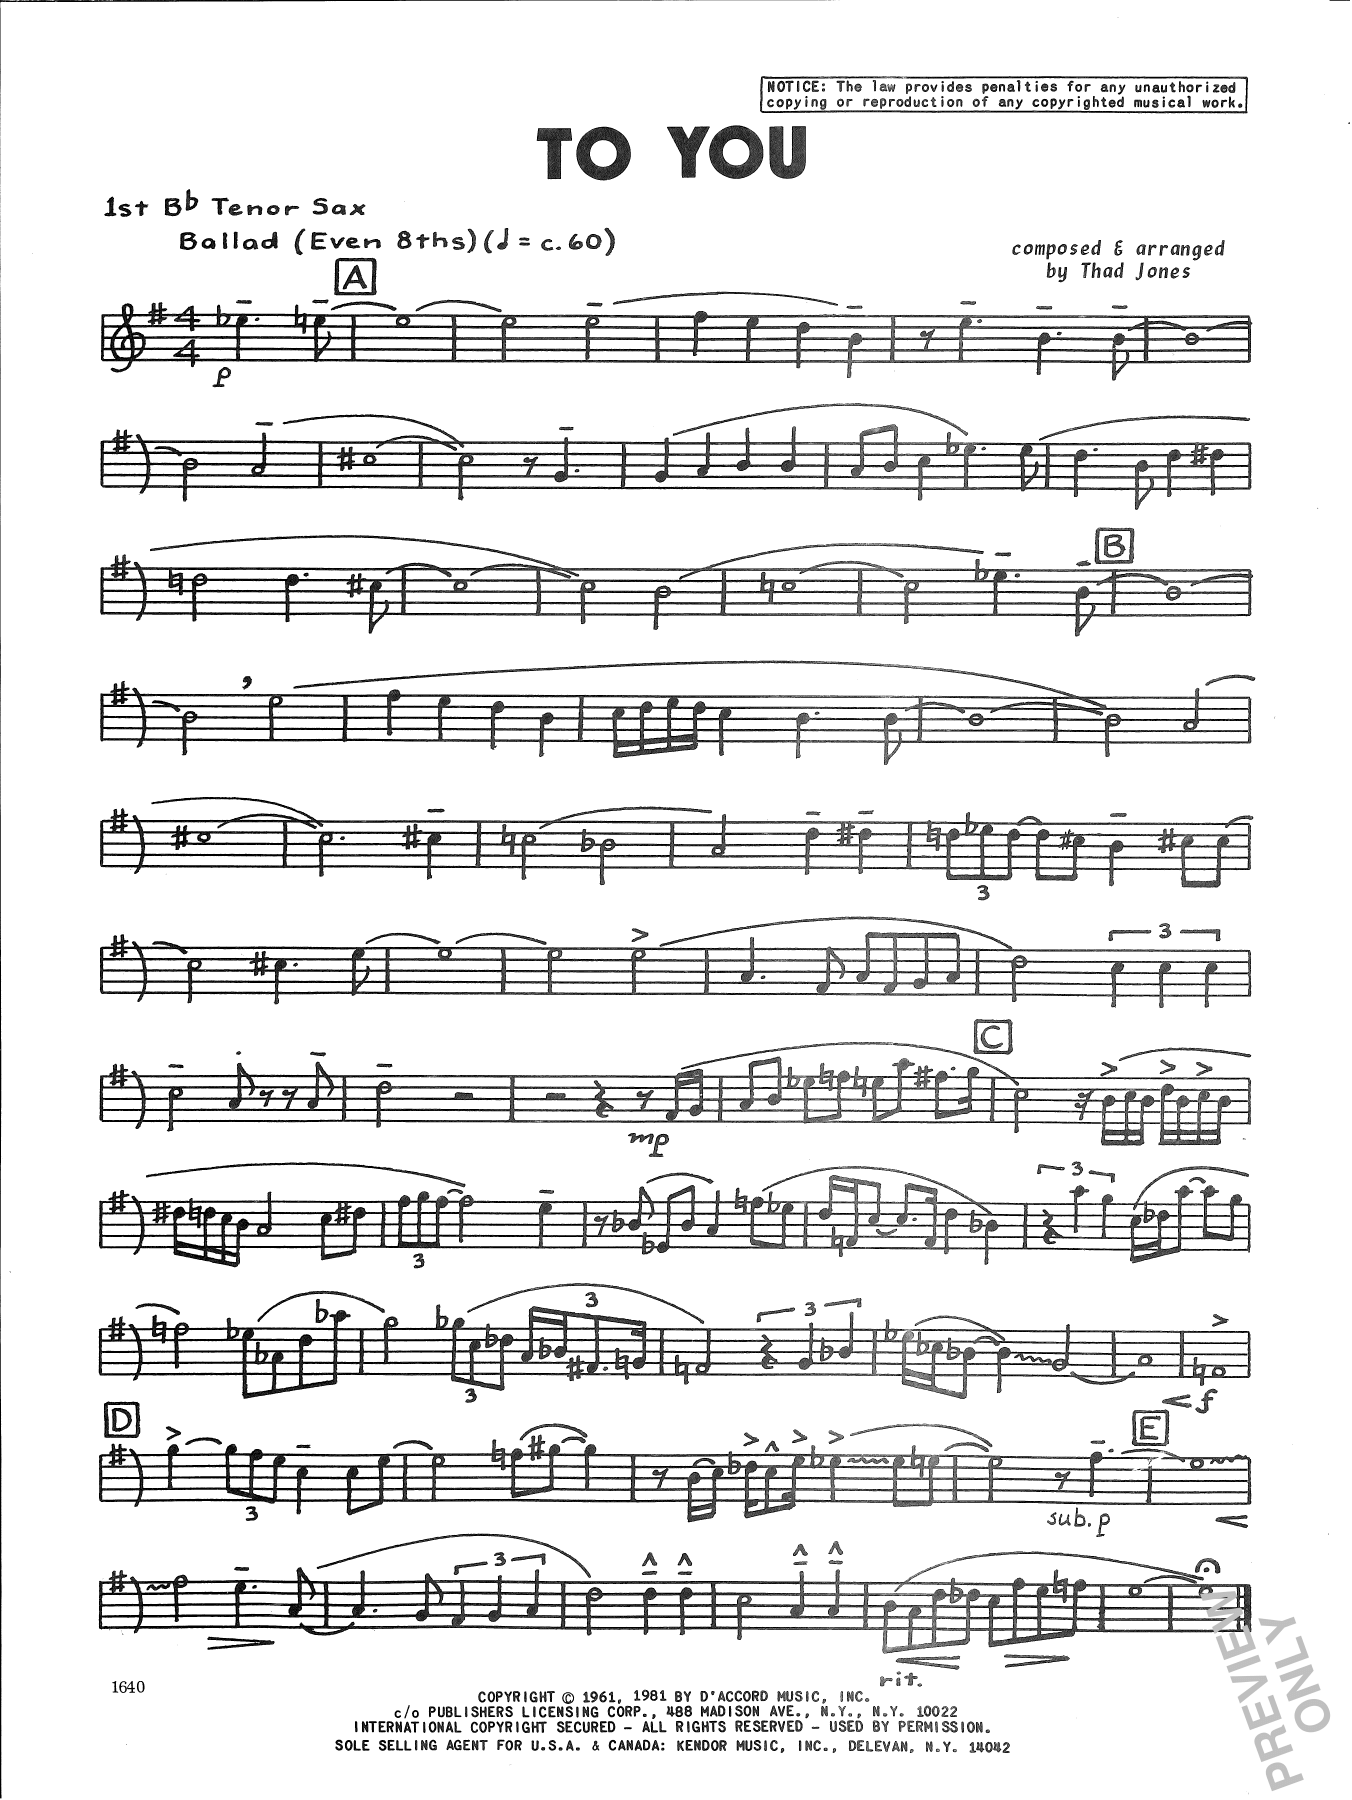 To You - 1st Tenor Saxophone (Jazz Ensemble) von Thad Jones